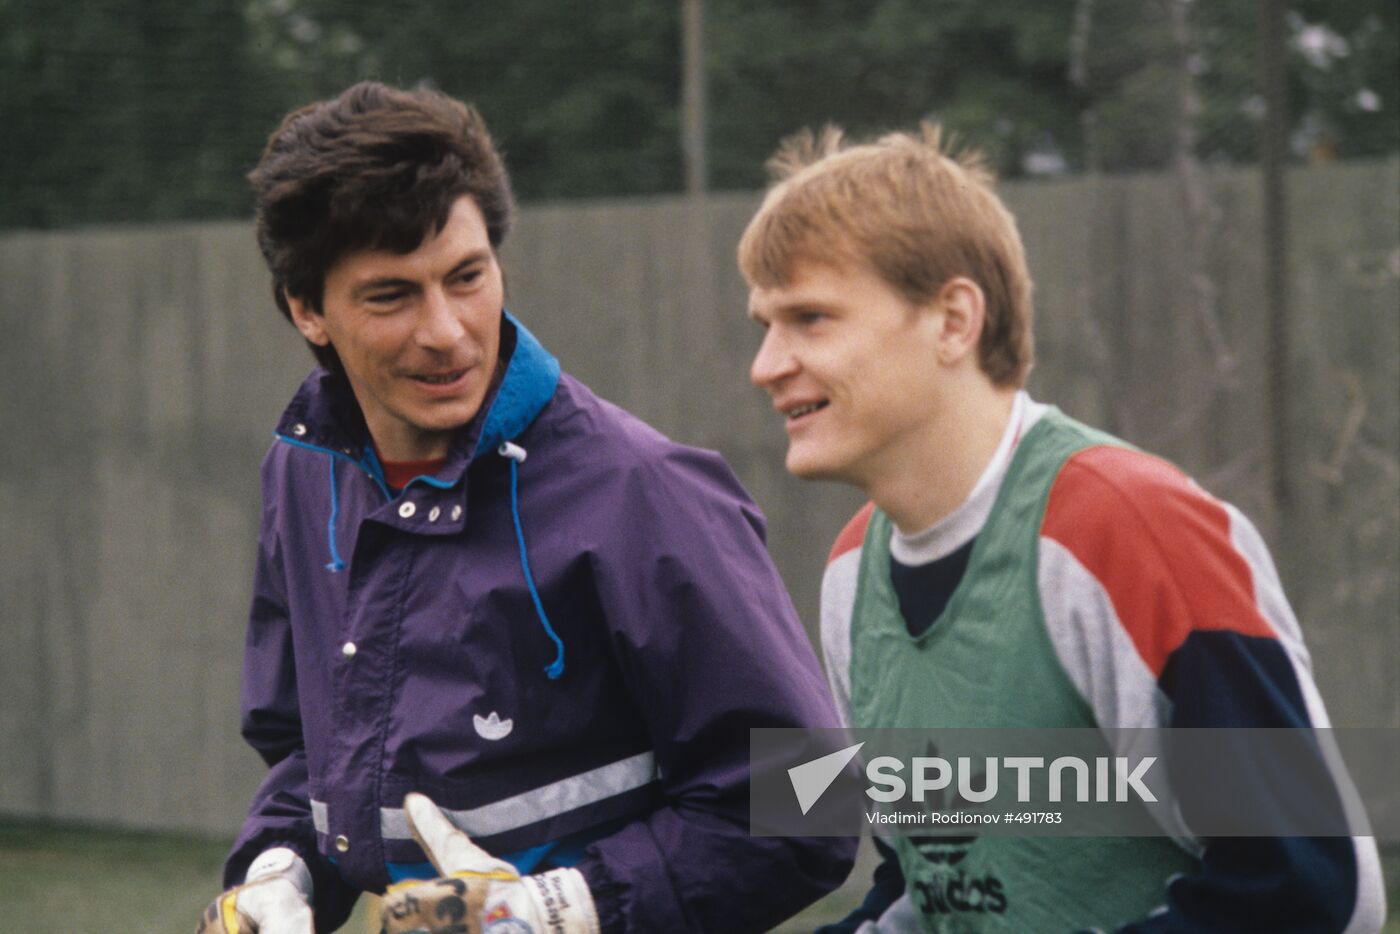 Rinat Dasayev and Sergei Gorlukovich